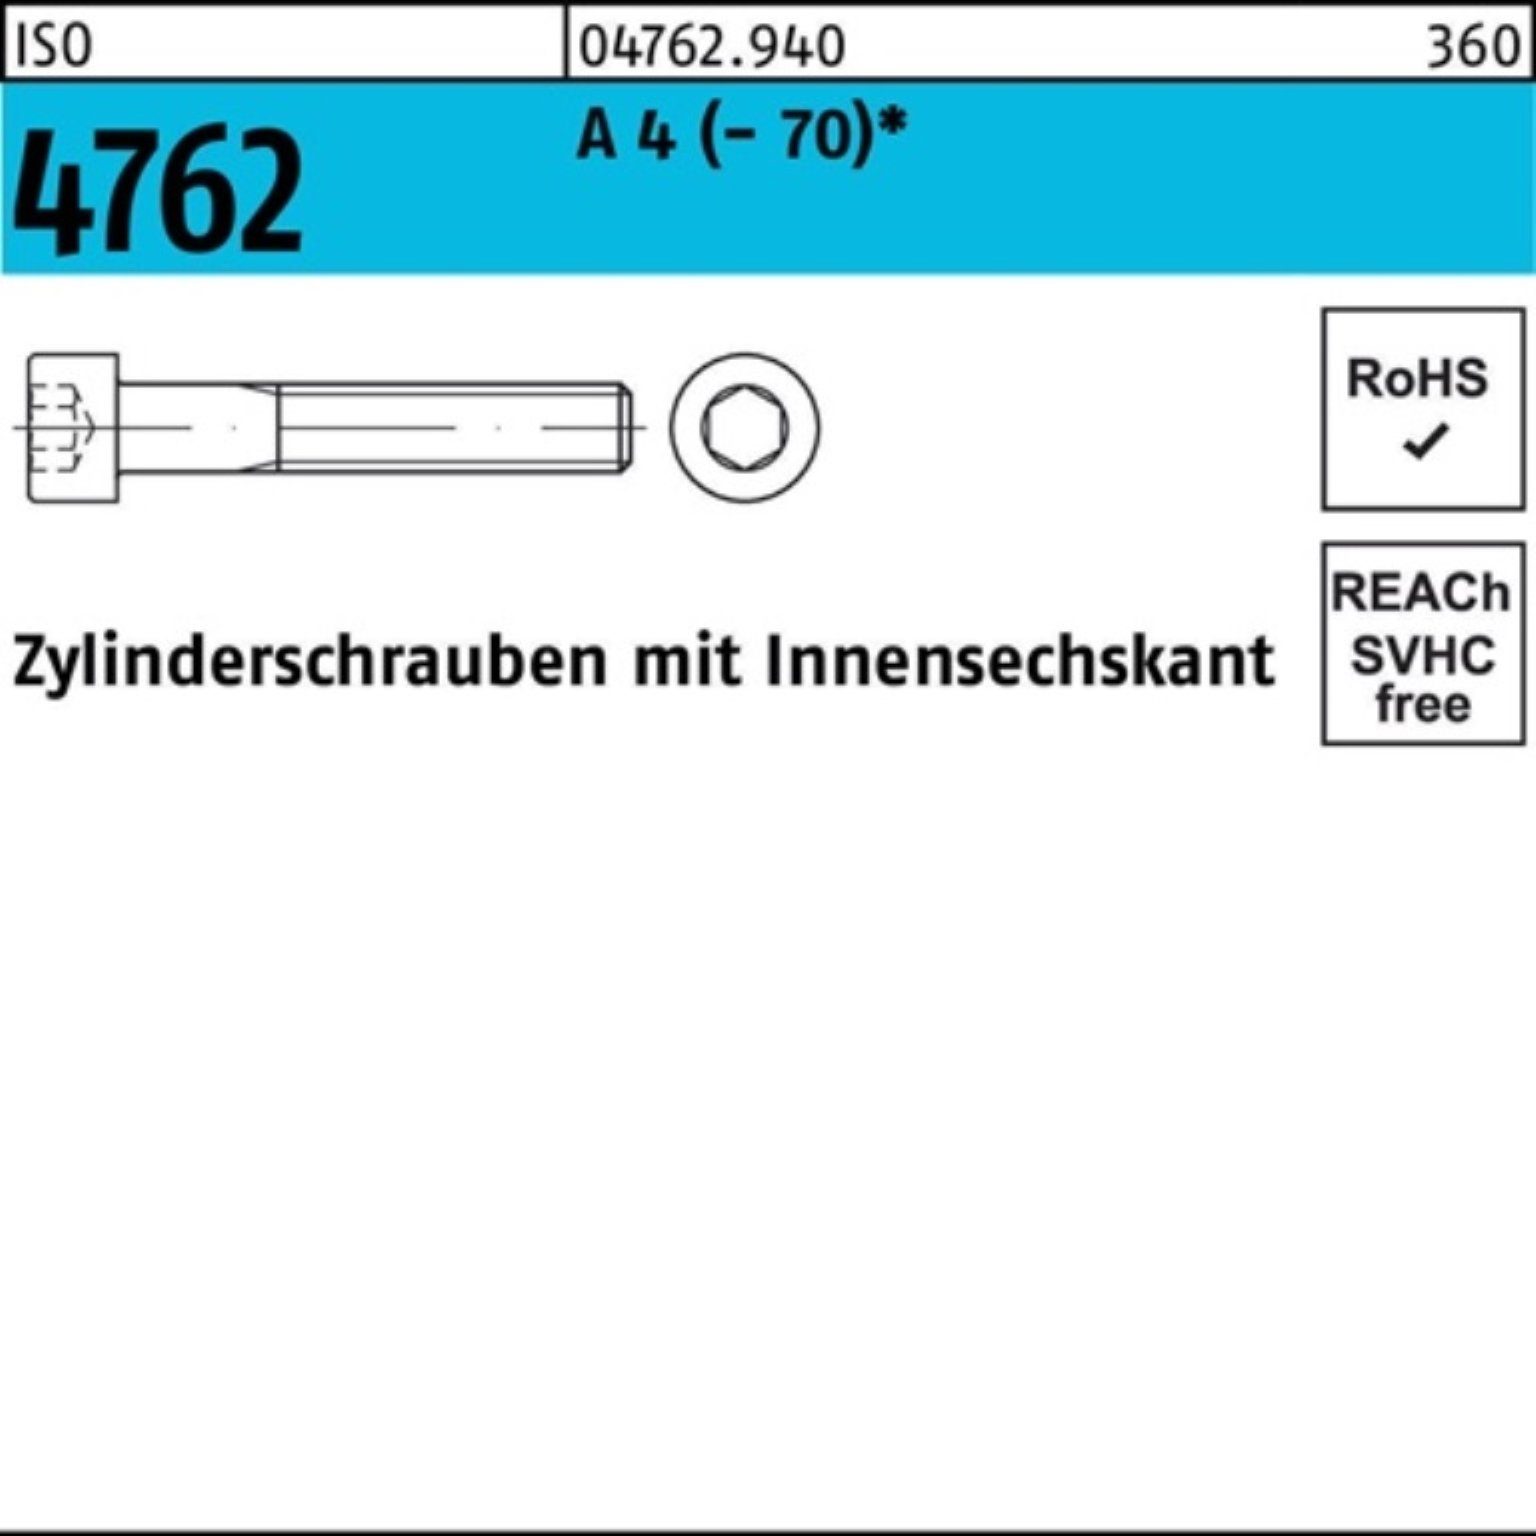 ISO Zylinderschraube A 12 M4x Reyher 4762 Zylinderschraube 4 Stück I 500 Pack Innen-6kt 500er